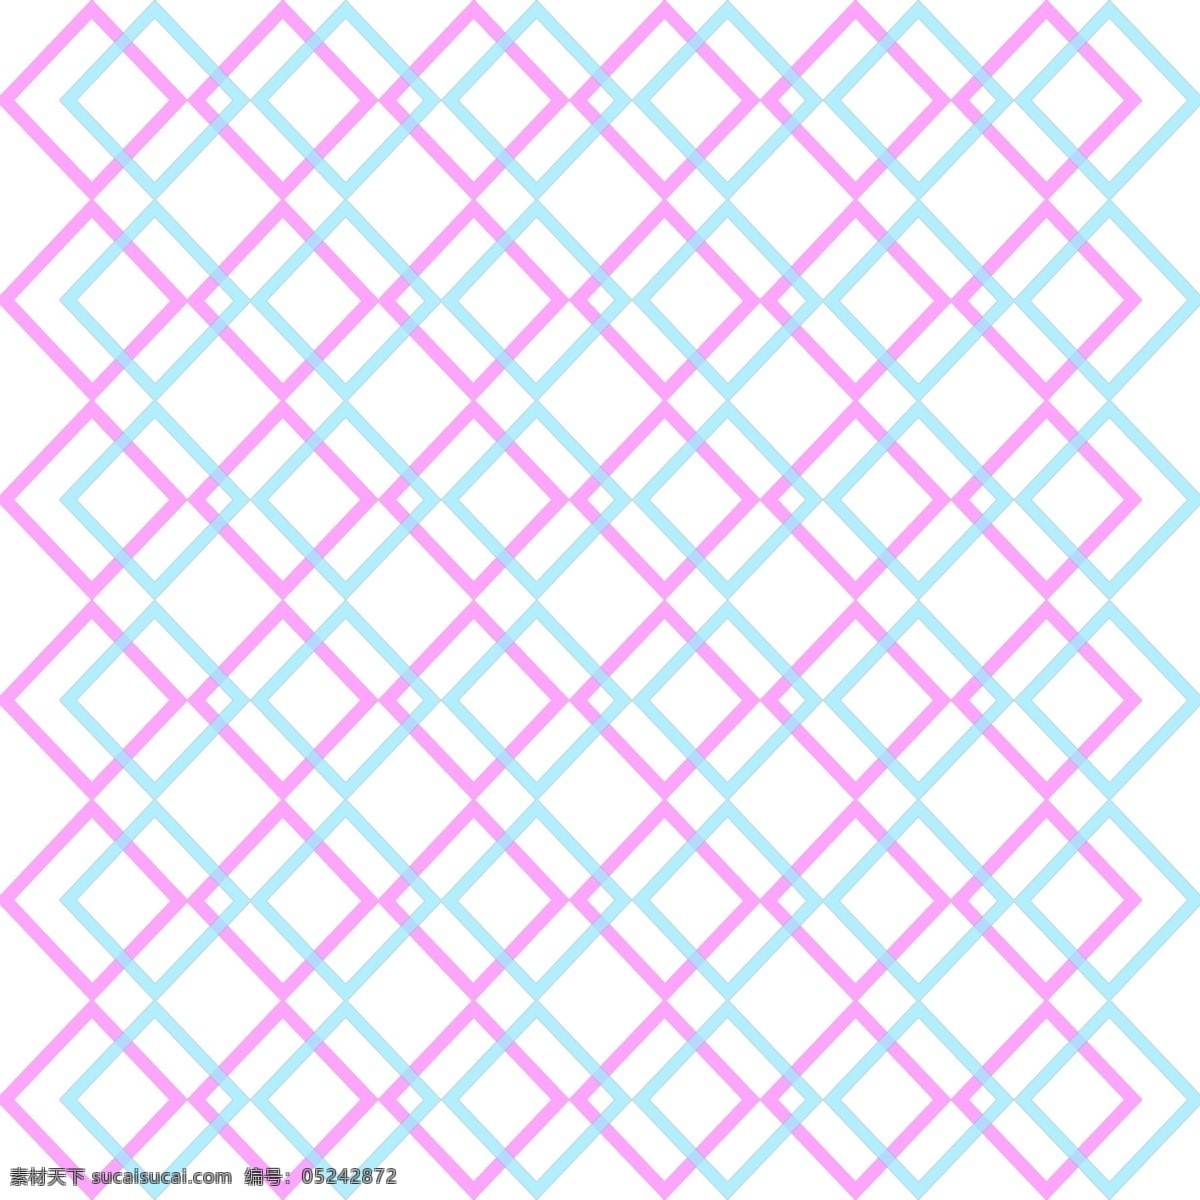 撞 色 炫彩 粉 蓝 几何形 背景 网格 撞色 粉蓝 几何 正方形 网格纹理 撞色科技感 科技感 撞色炫彩网格